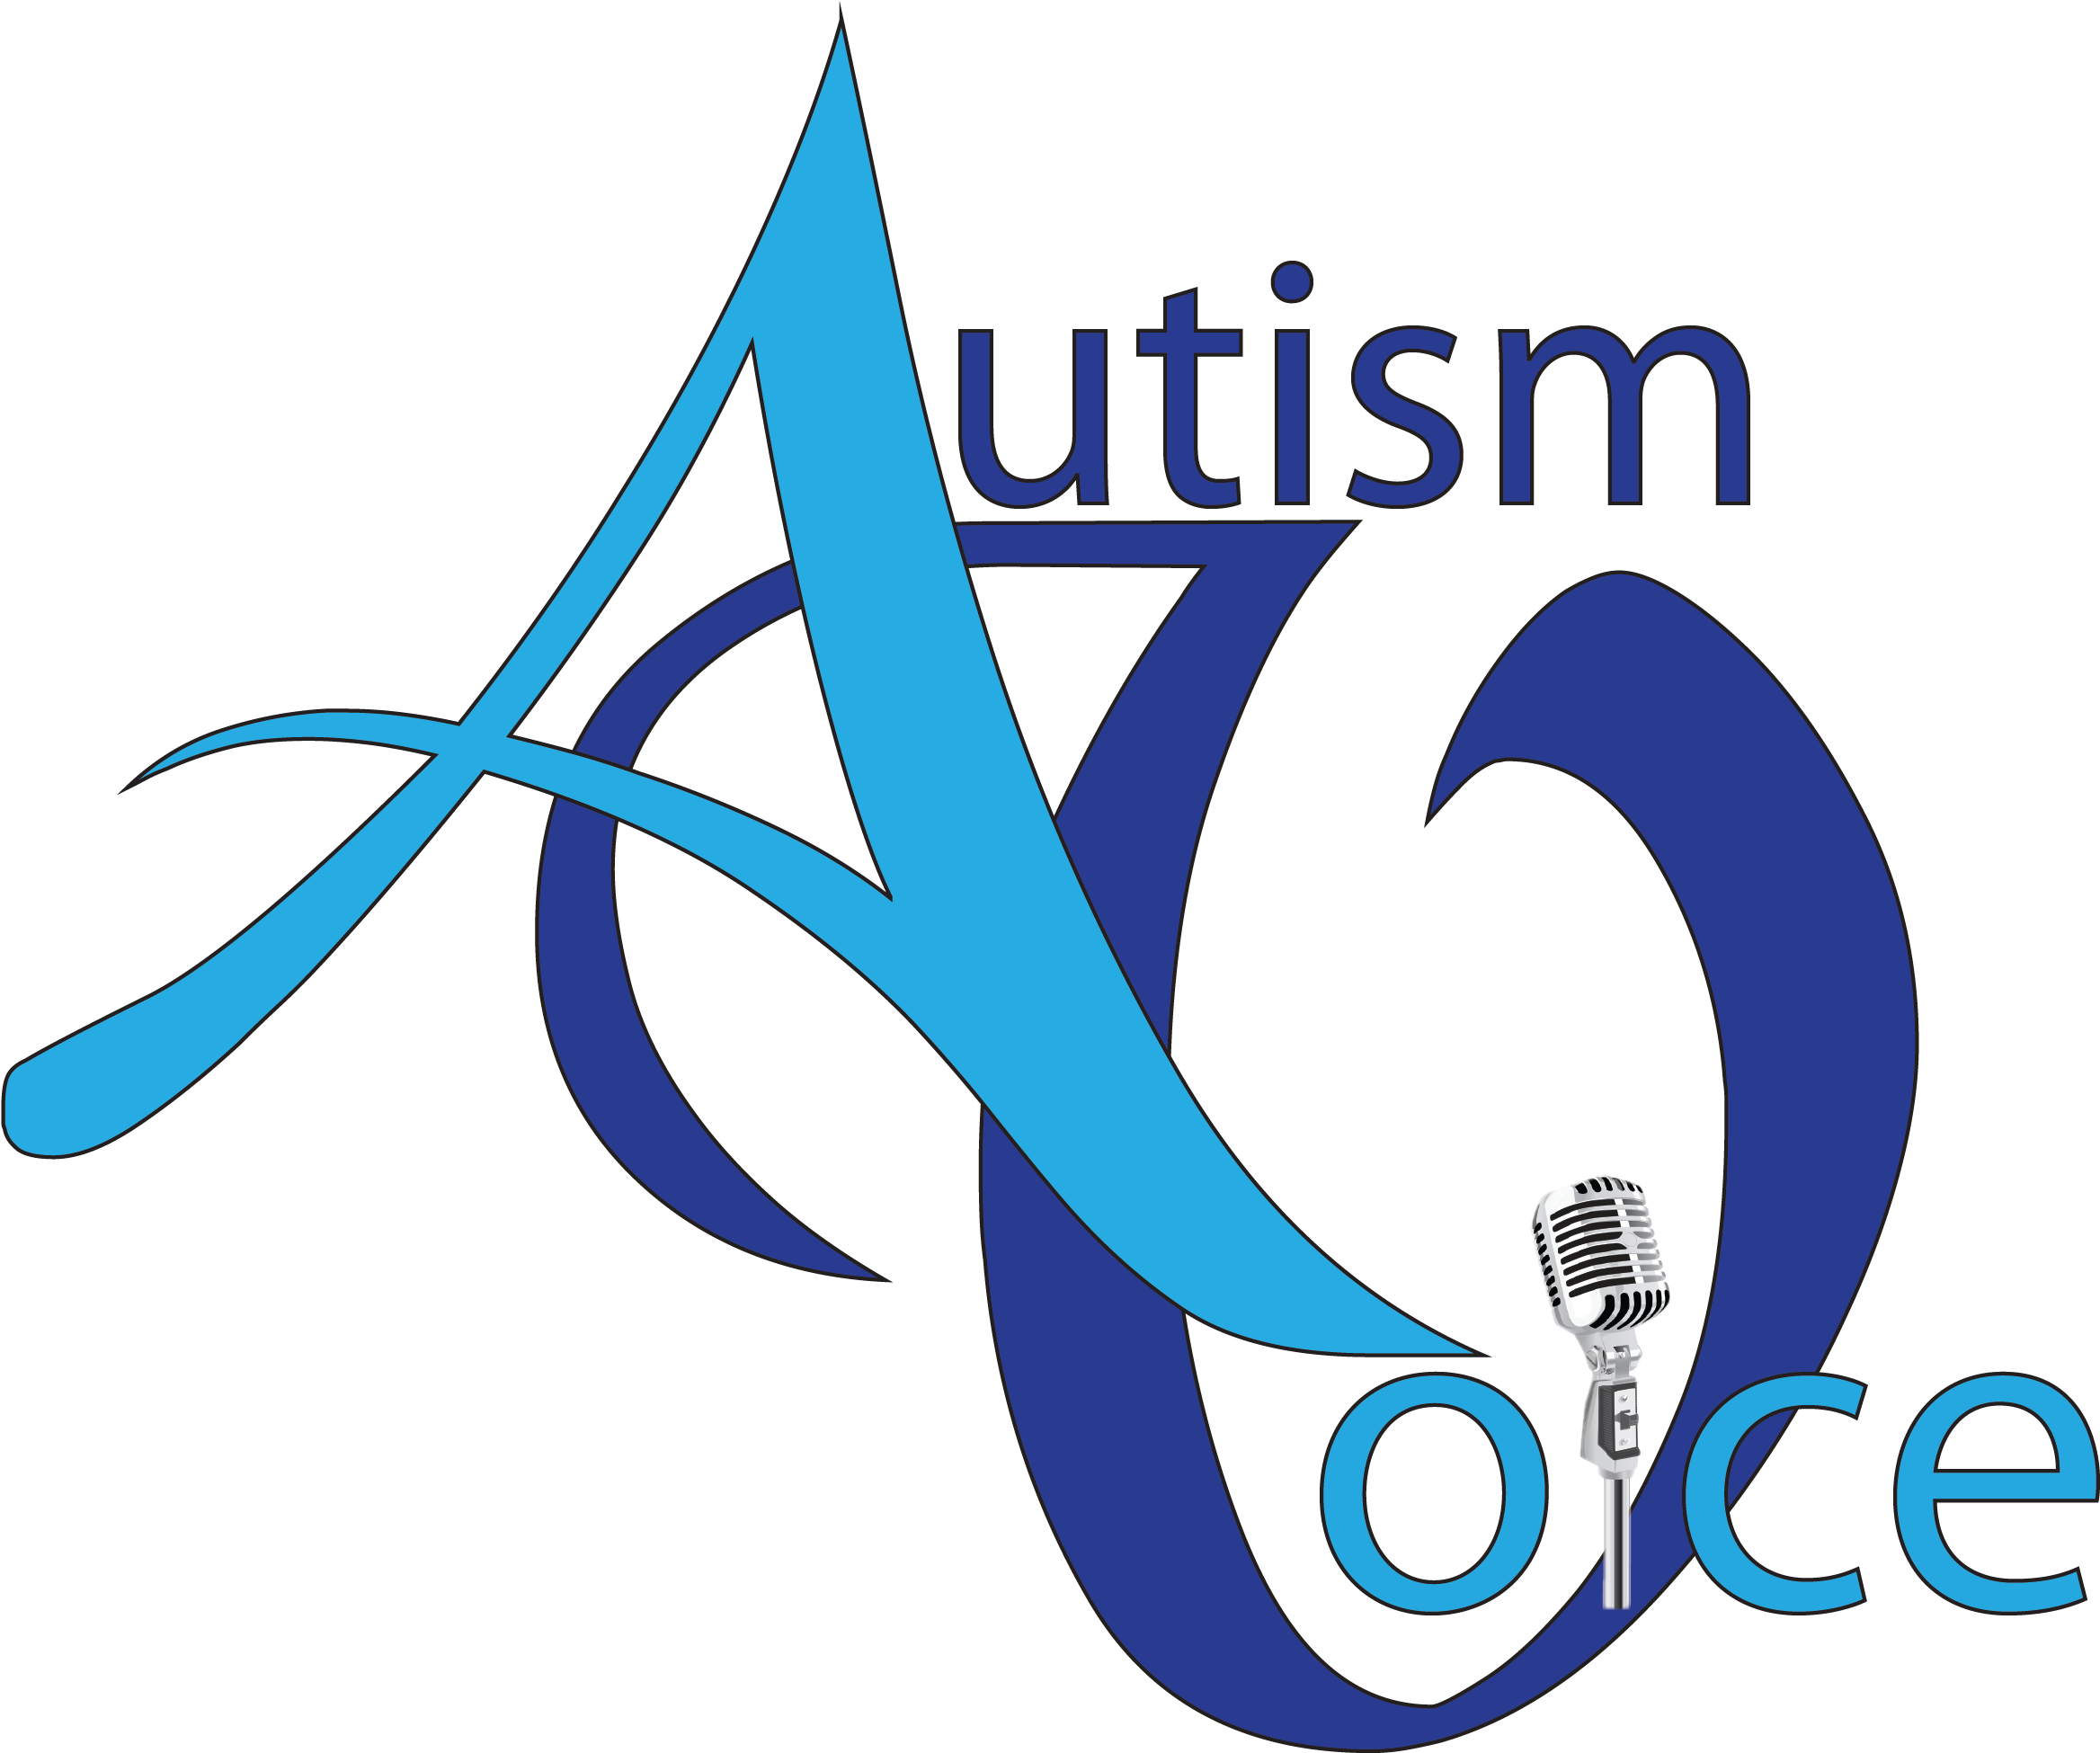 About Us - Autism Voice (2360x2461)